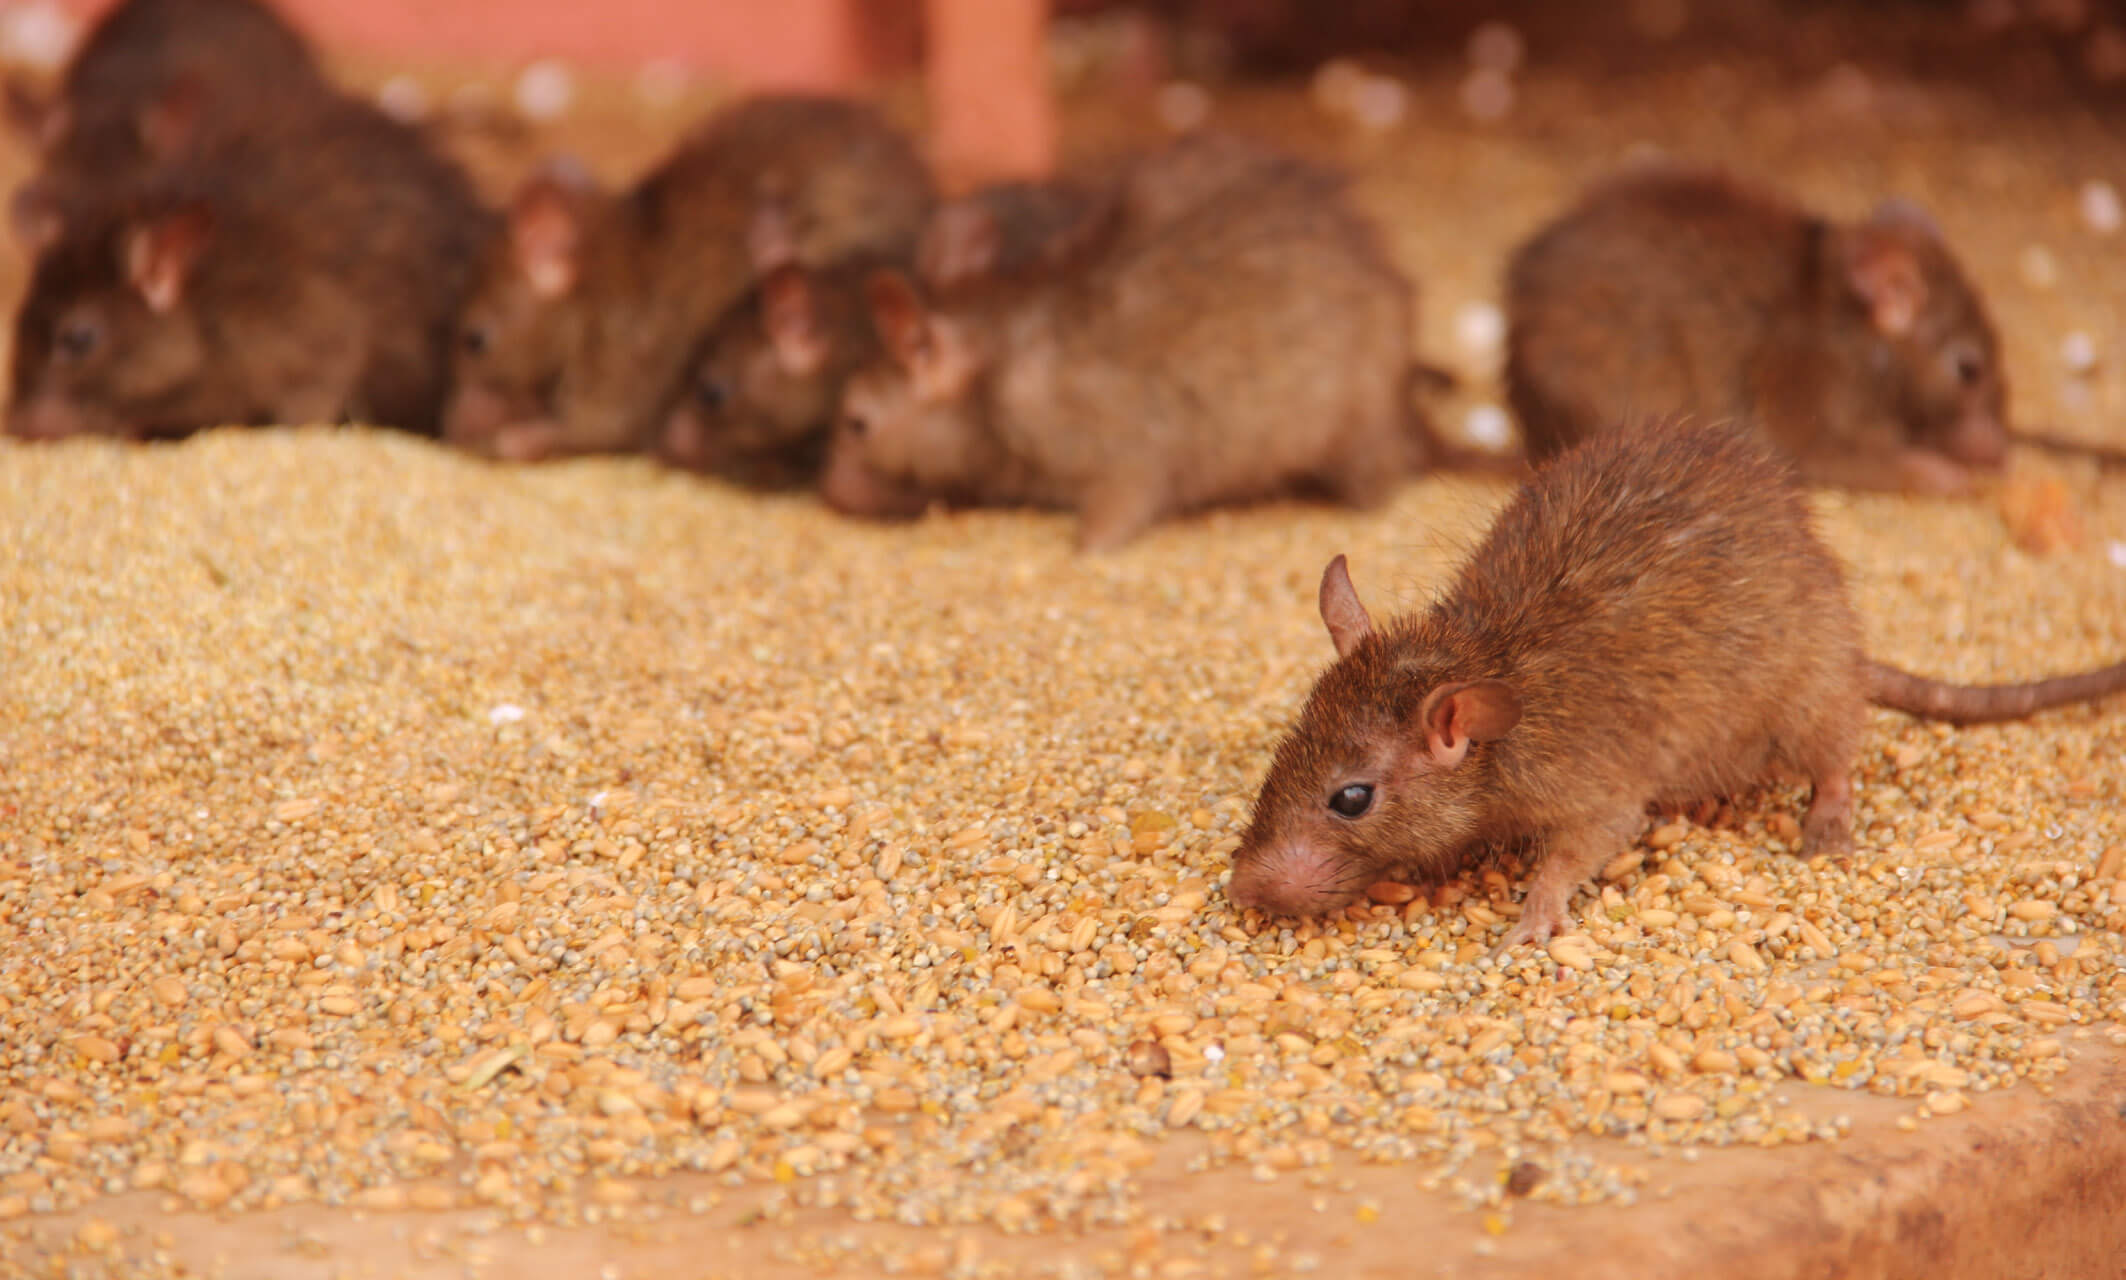 Acaba con la plaga de ratones Veneno Mata Ratas dosis letal 100% EFECTIVO 